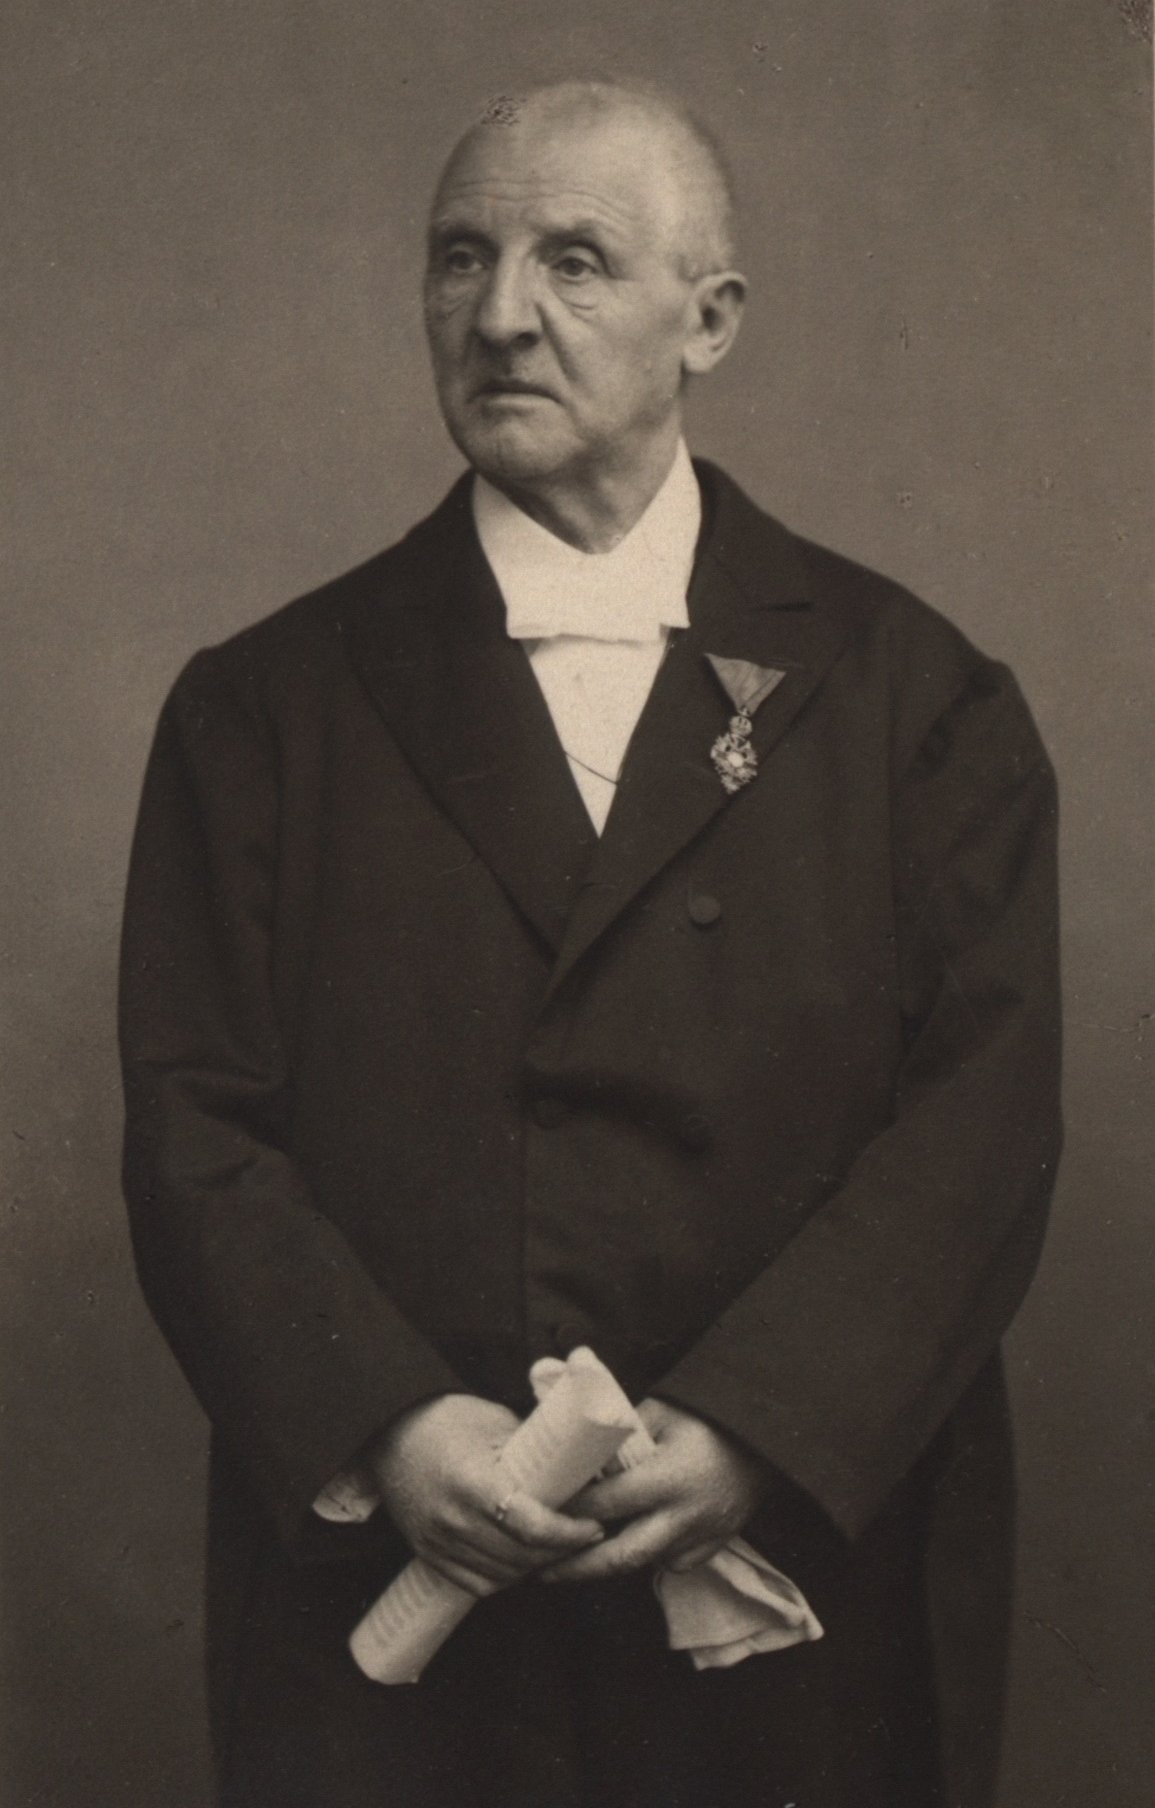 Porträt-Foto von Anton Bruckner. Er blickt zur Seite und hält Dokumente in seiner Hand.